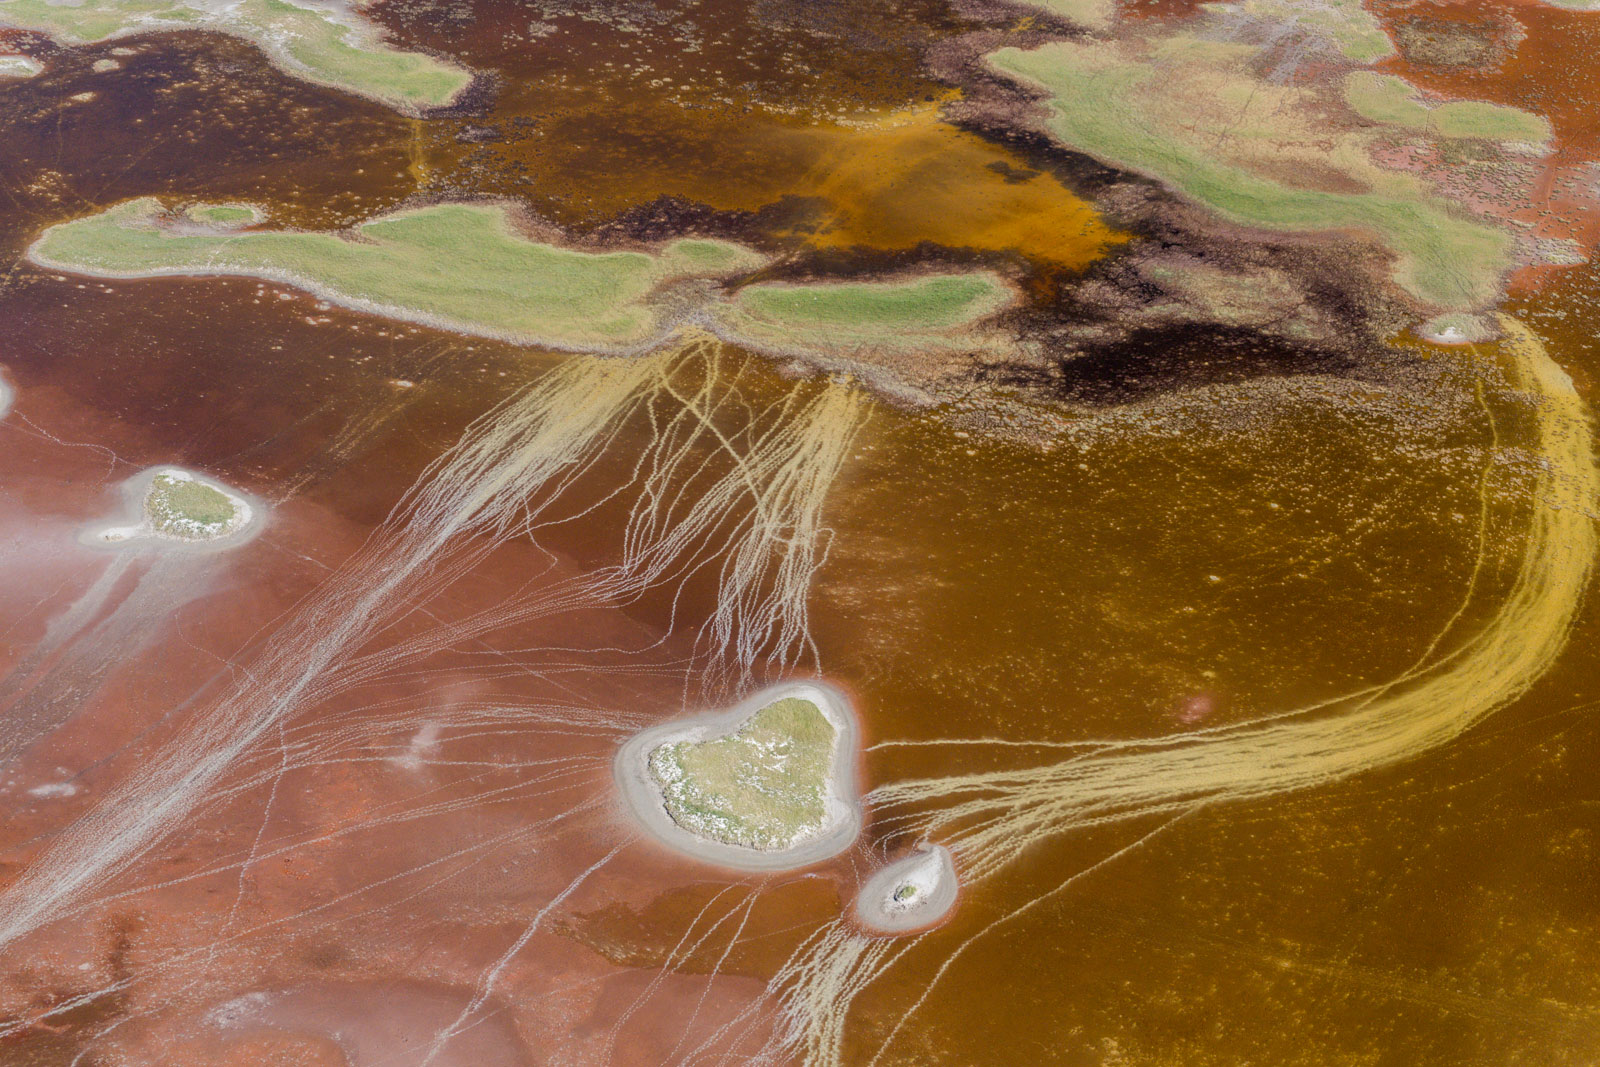 Animal tracks across algae filled pans, Makgadikgadi Pans, Botswana